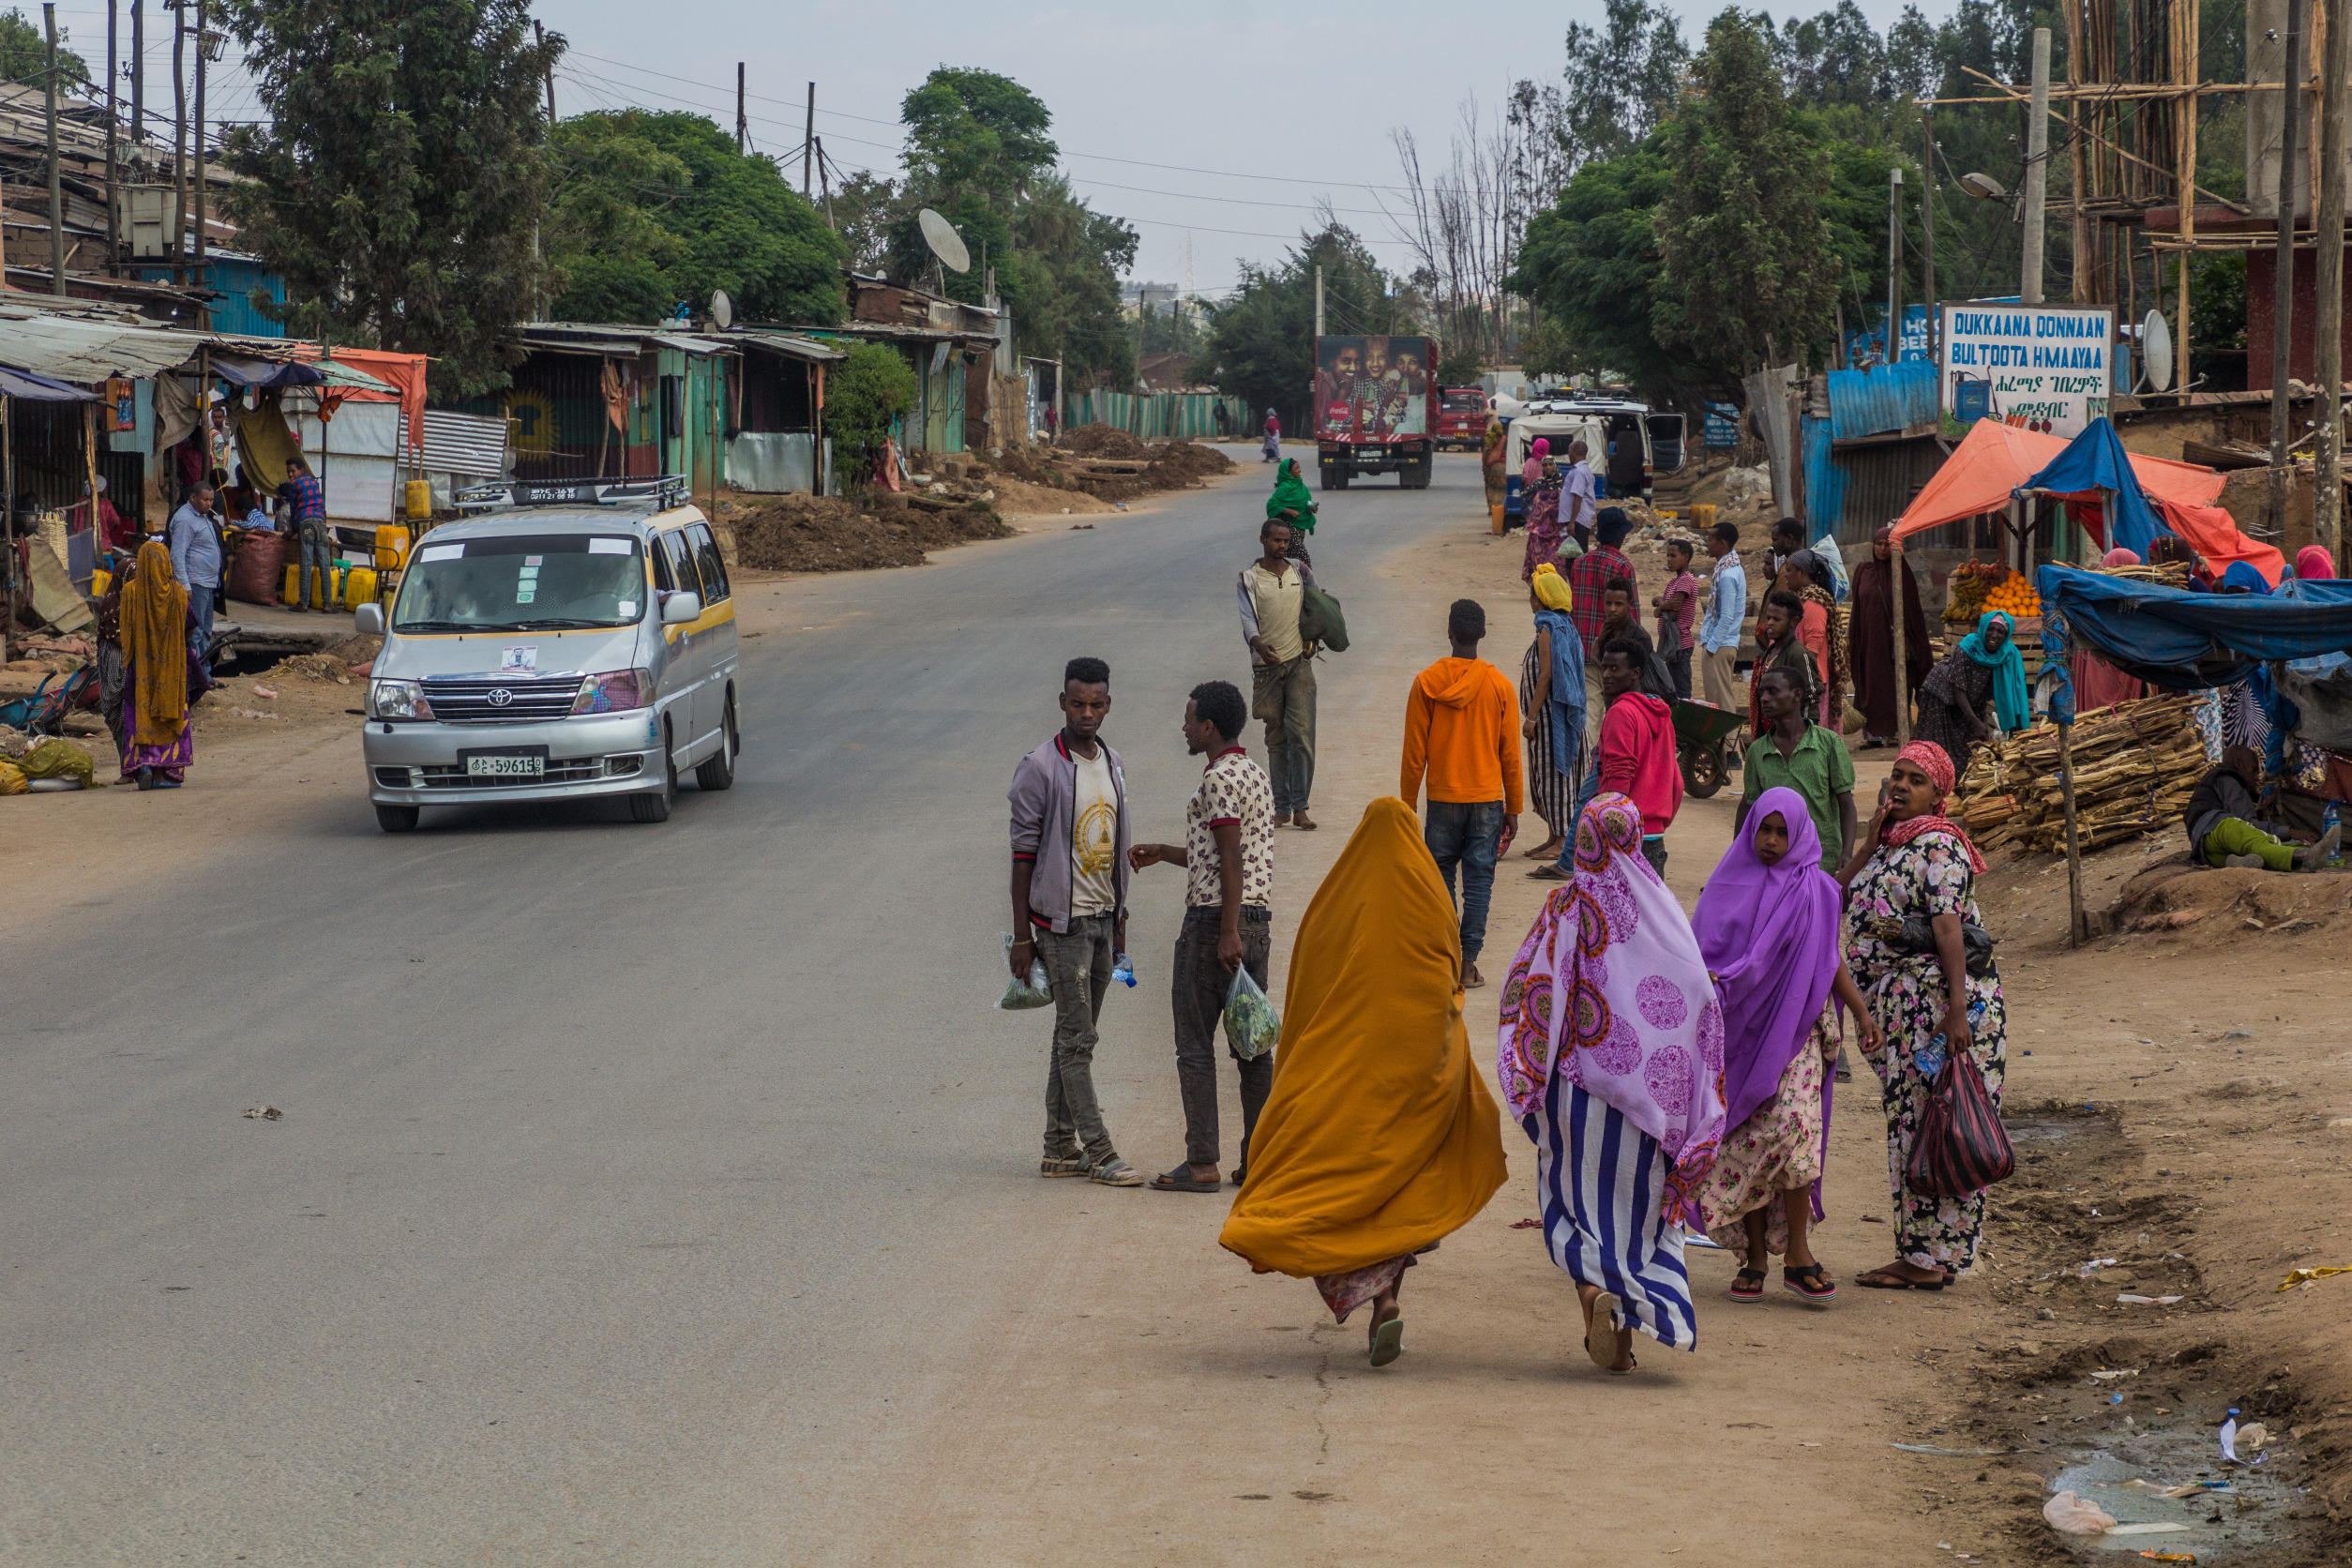 The inefficient energy empire strikes again – in Ethiopia